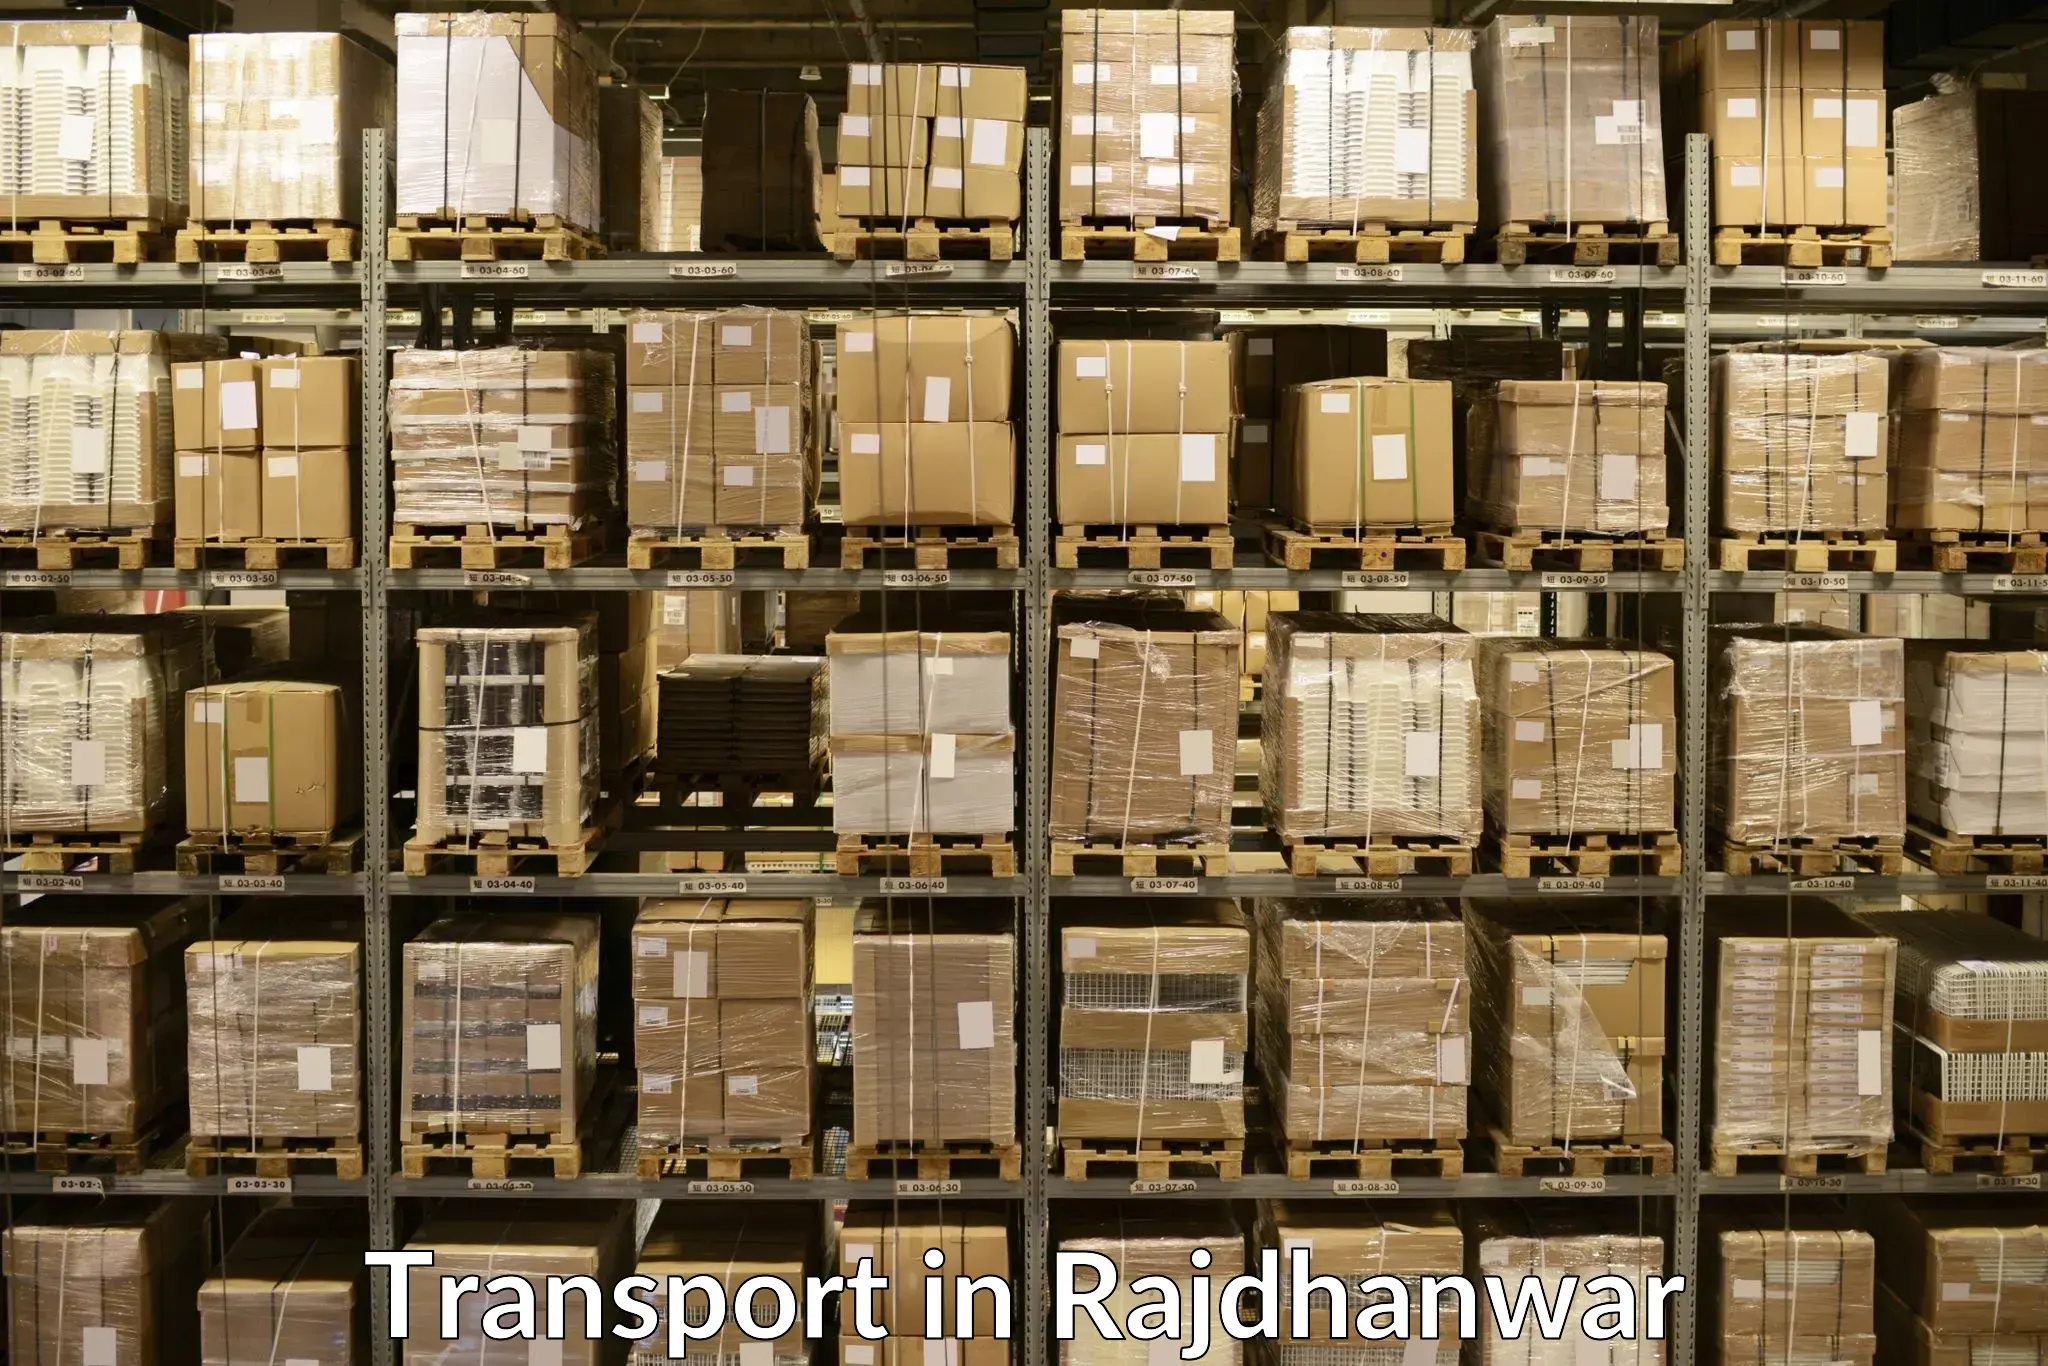 Cargo train transport services in Rajdhanwar